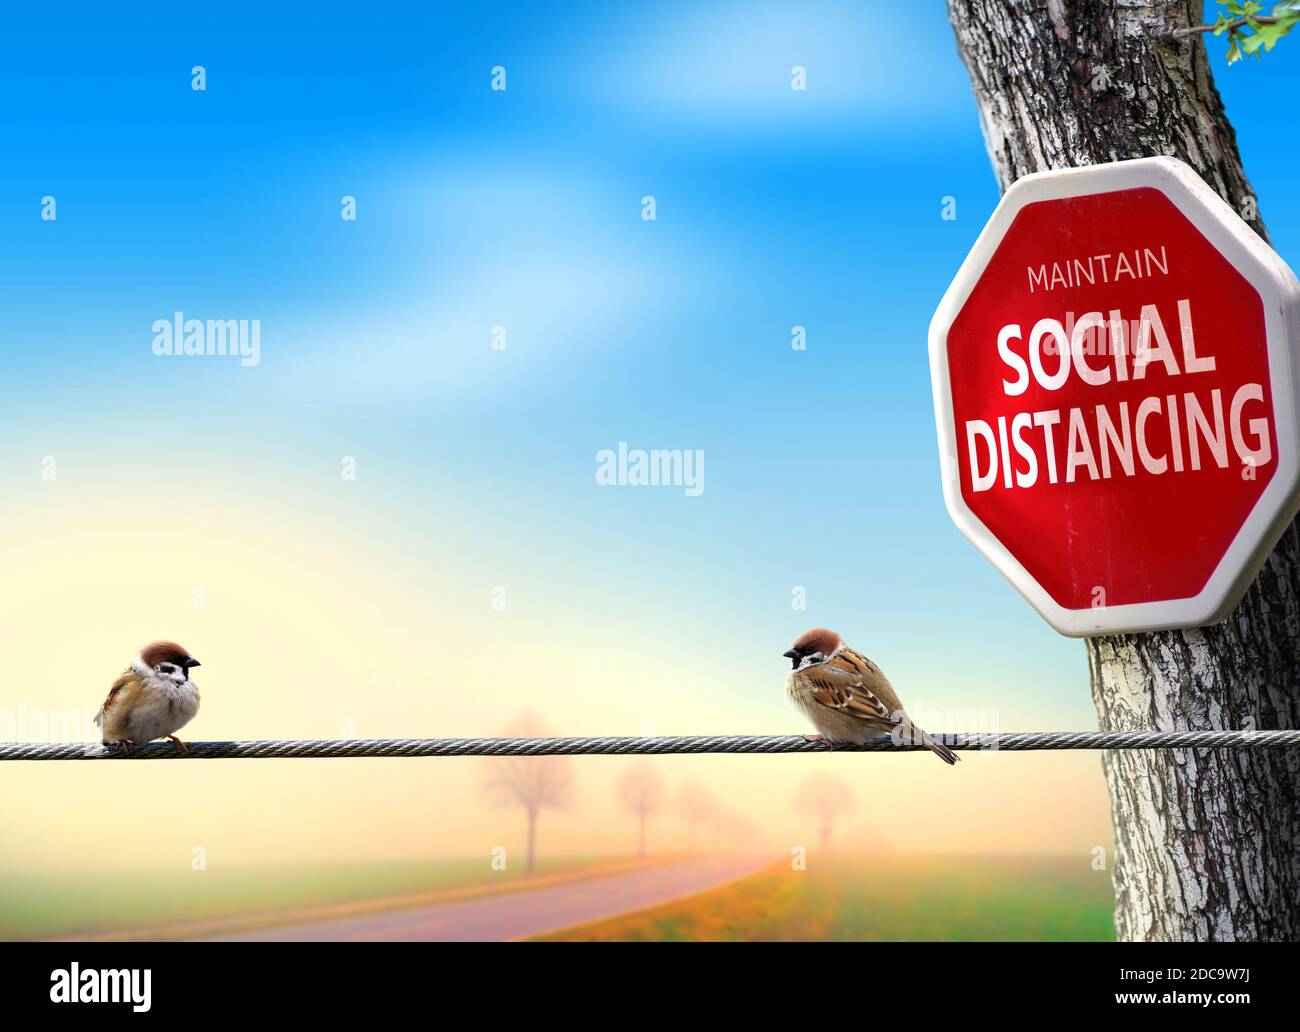 Vögel üben soziale Distanzierung. Coronavirus Awareness Themenkonzept mit Humor. Stockfoto